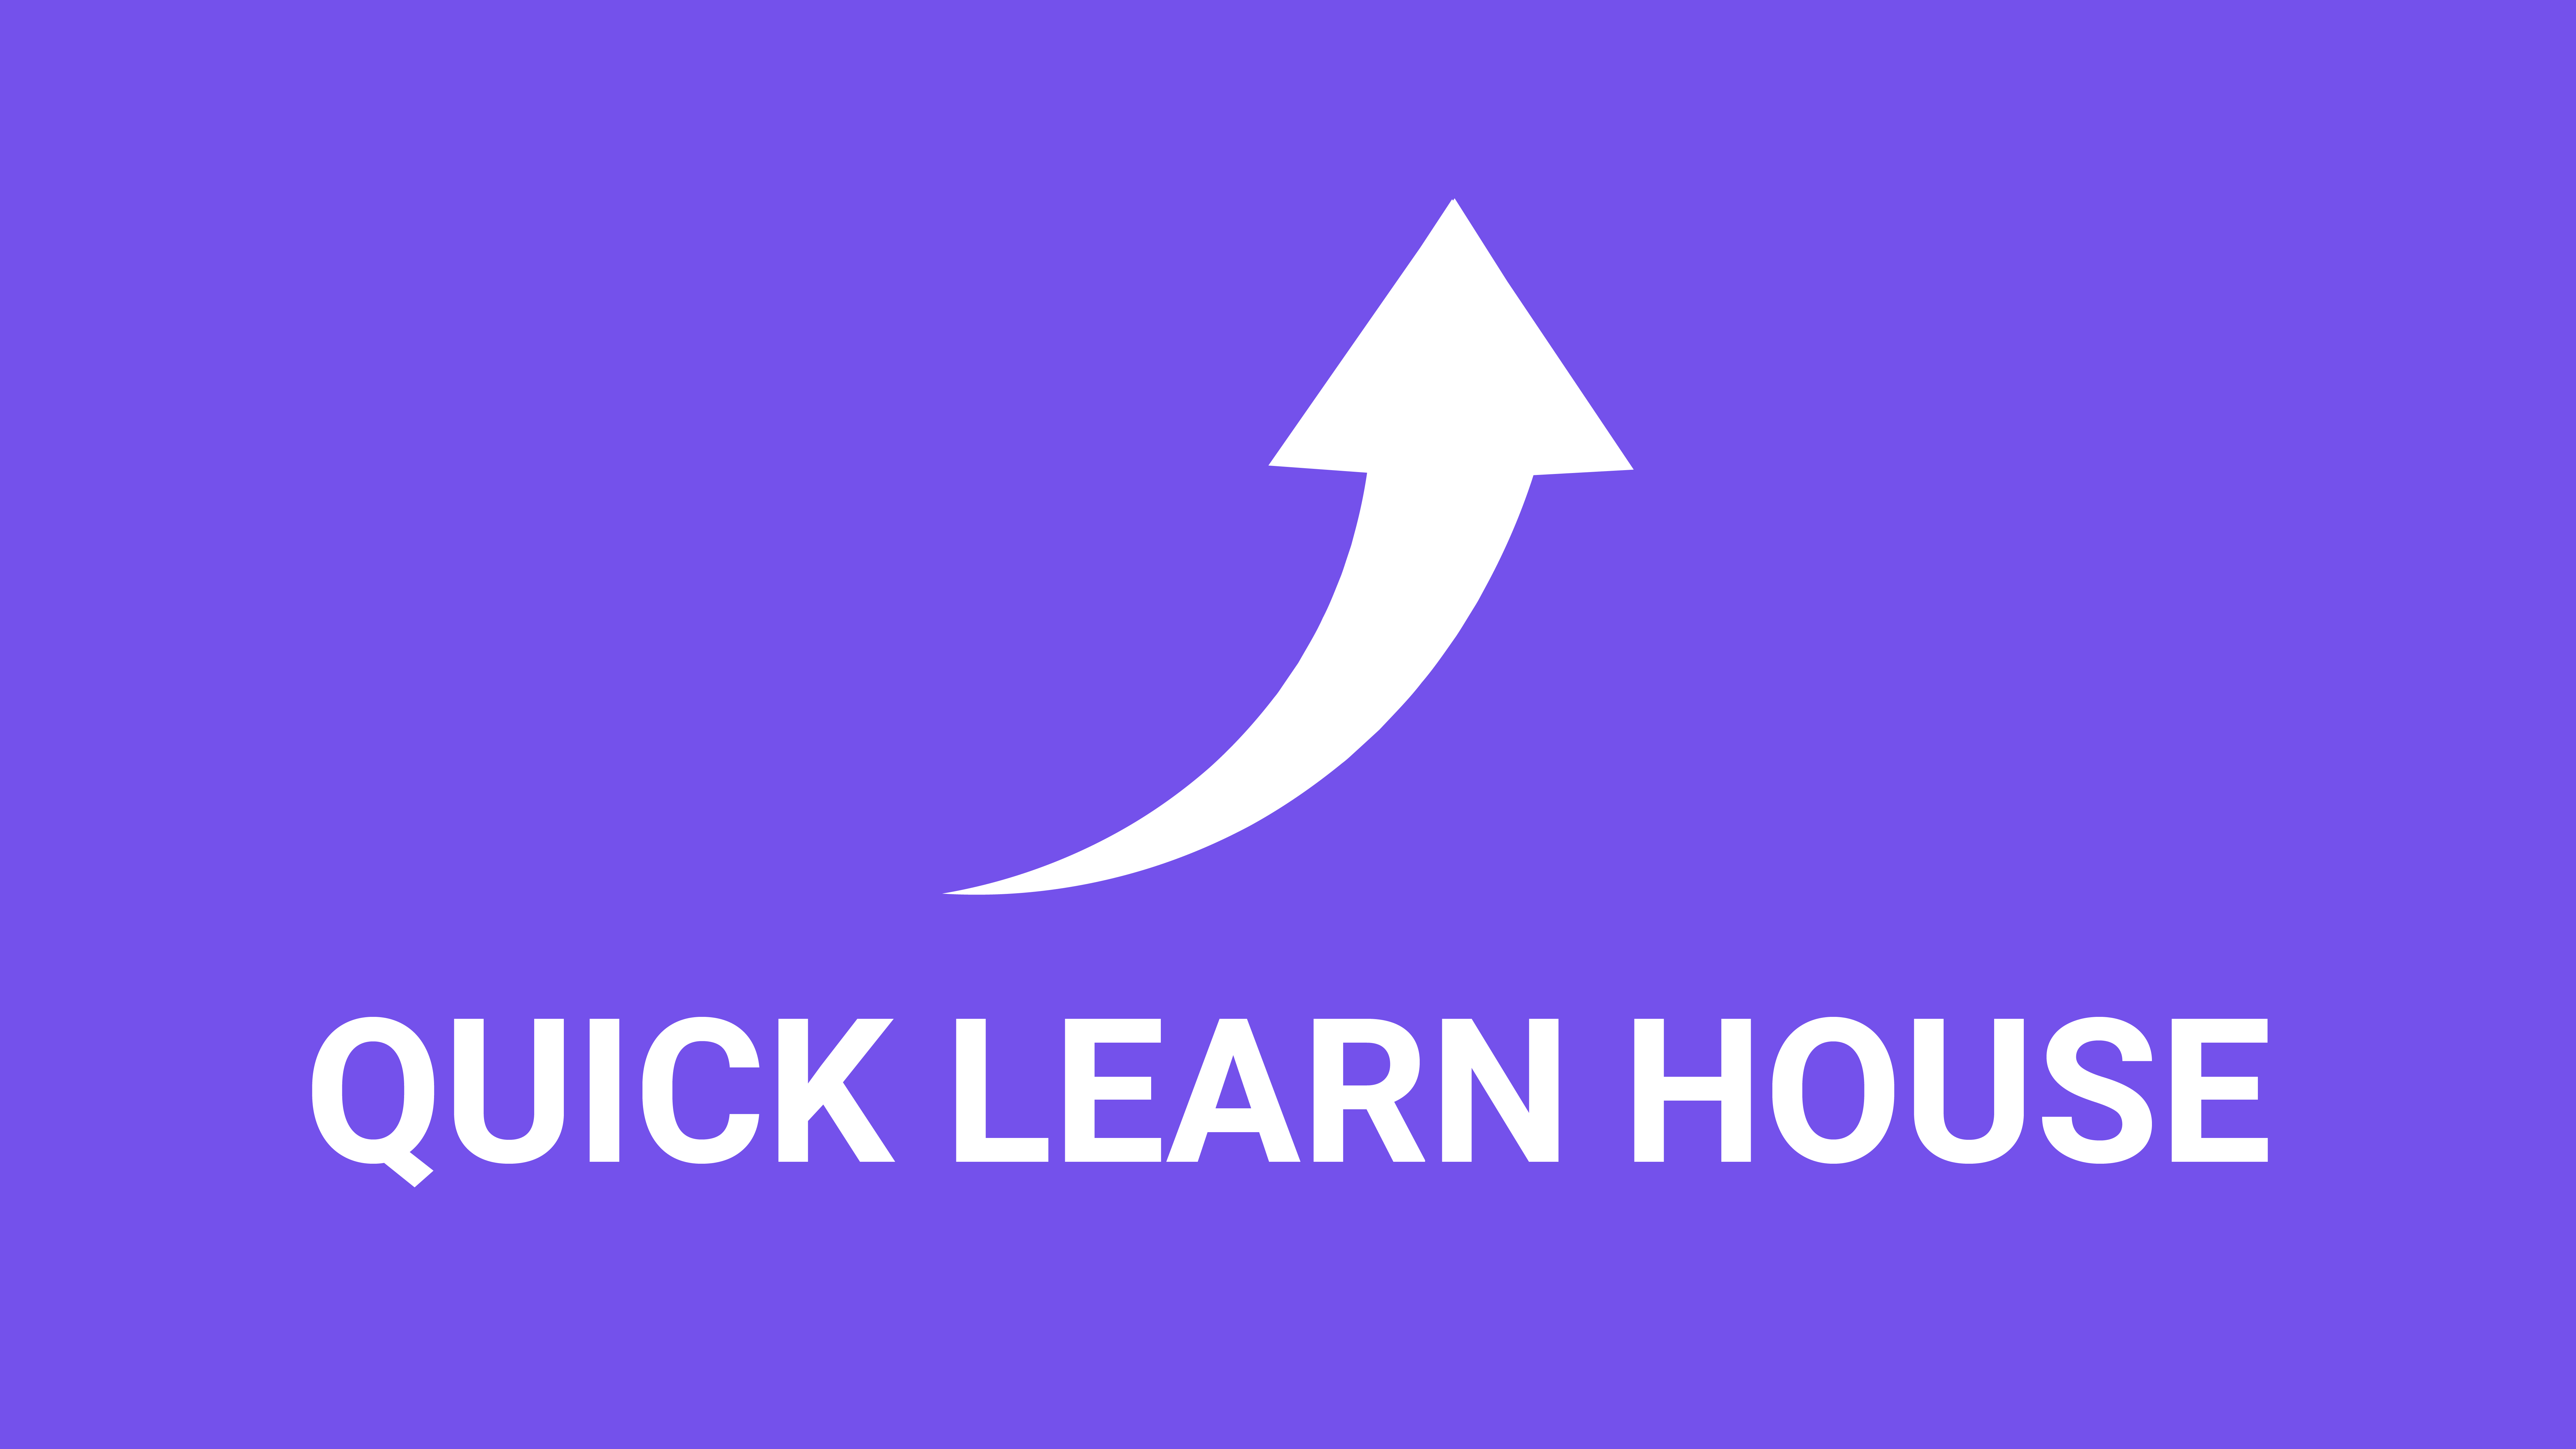 Découvrez QucikLearnHouse, notre plateforme qui donne une meilleure direction à votre vie professionnelle